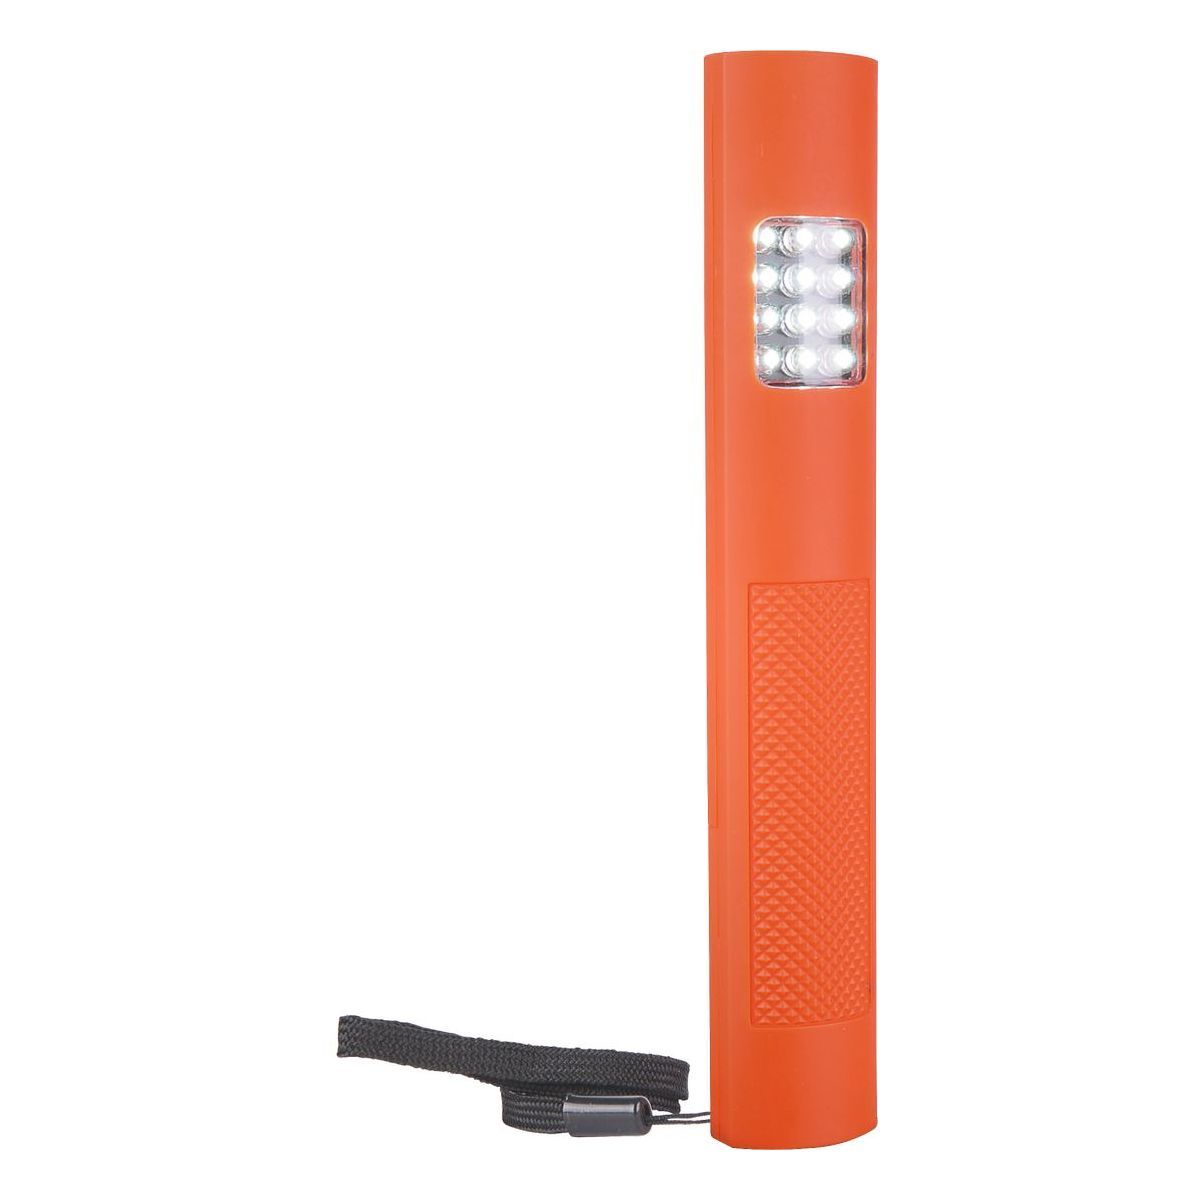 Автомобильный светодиодный фонарь Sloter FLD01-1,5W оранжевый. Фото 1